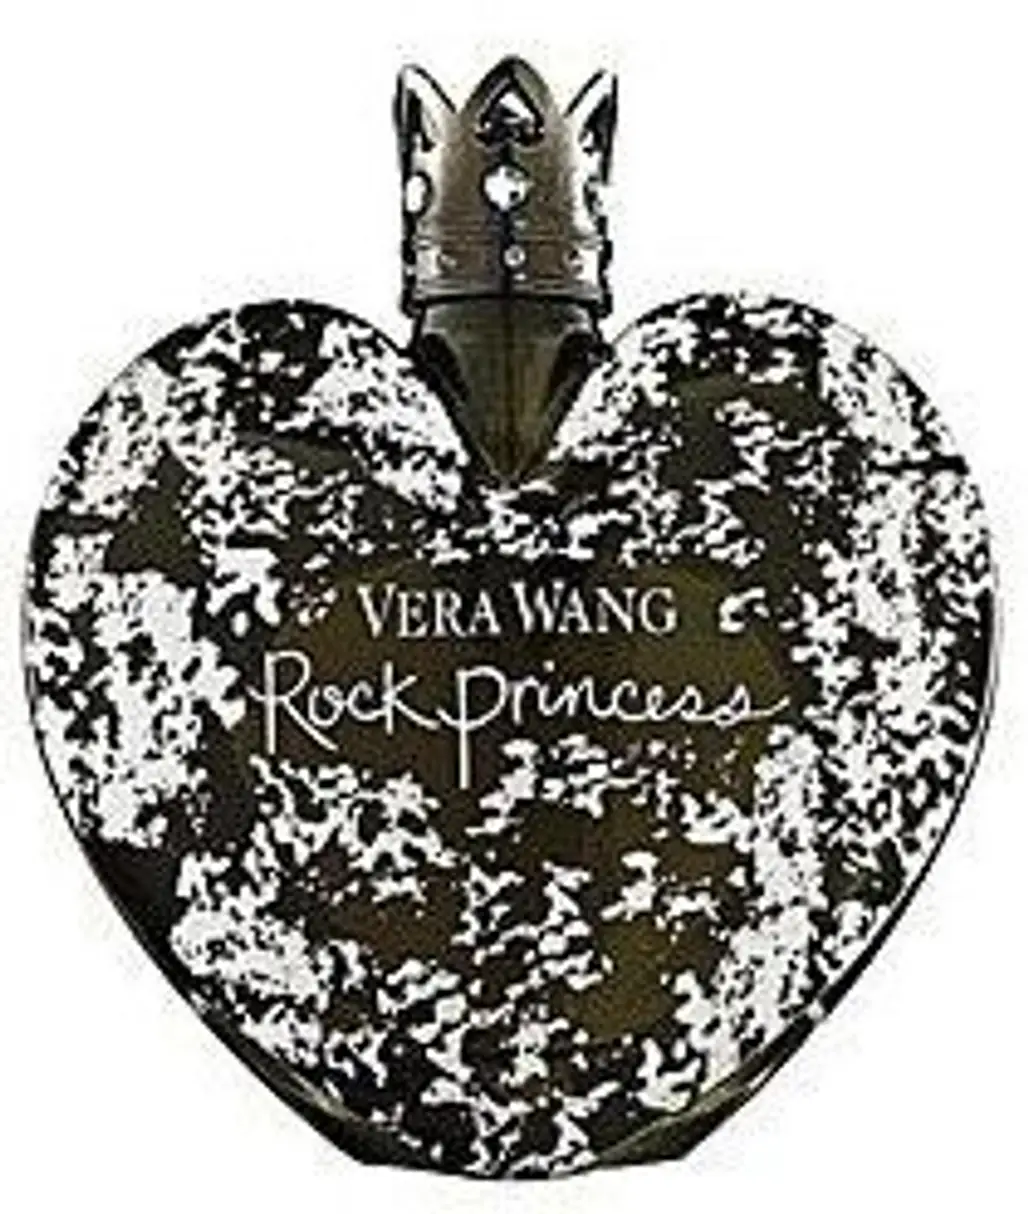 Rock Princess by Vera Wang